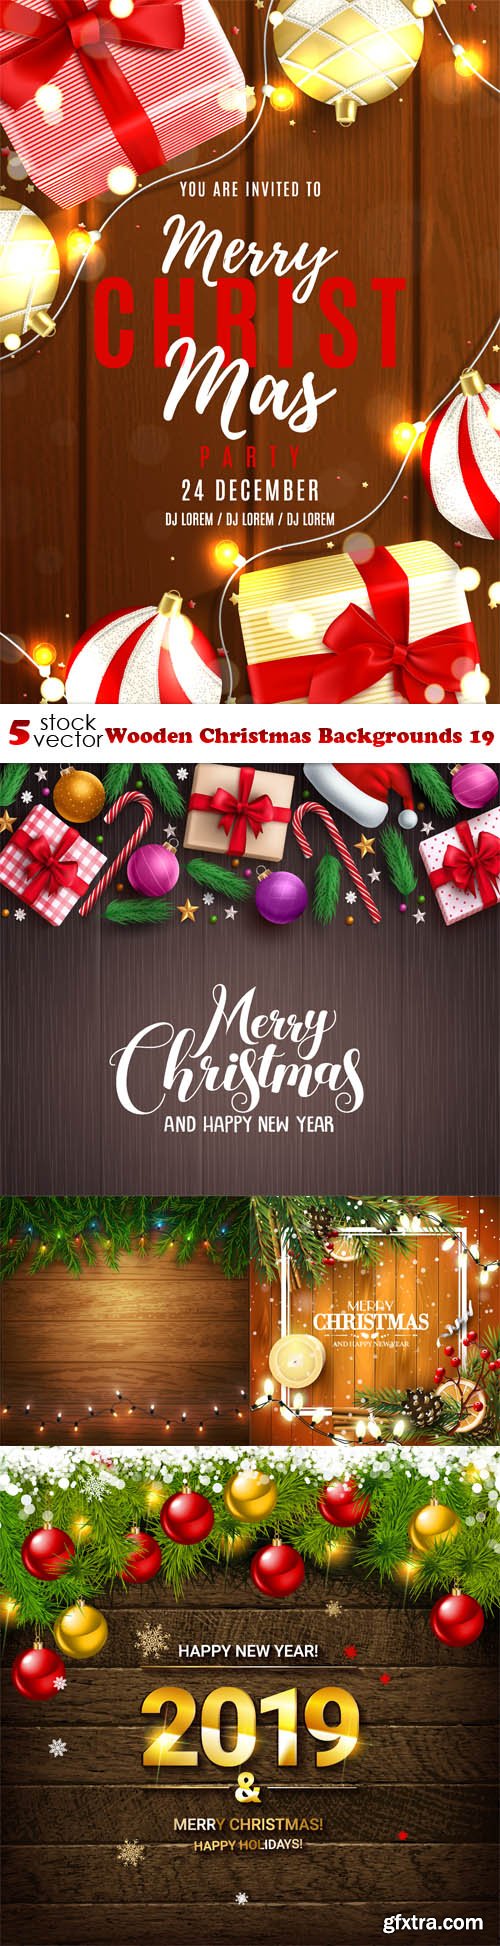 Vectors - Wooden Christmas Backgrounds 19